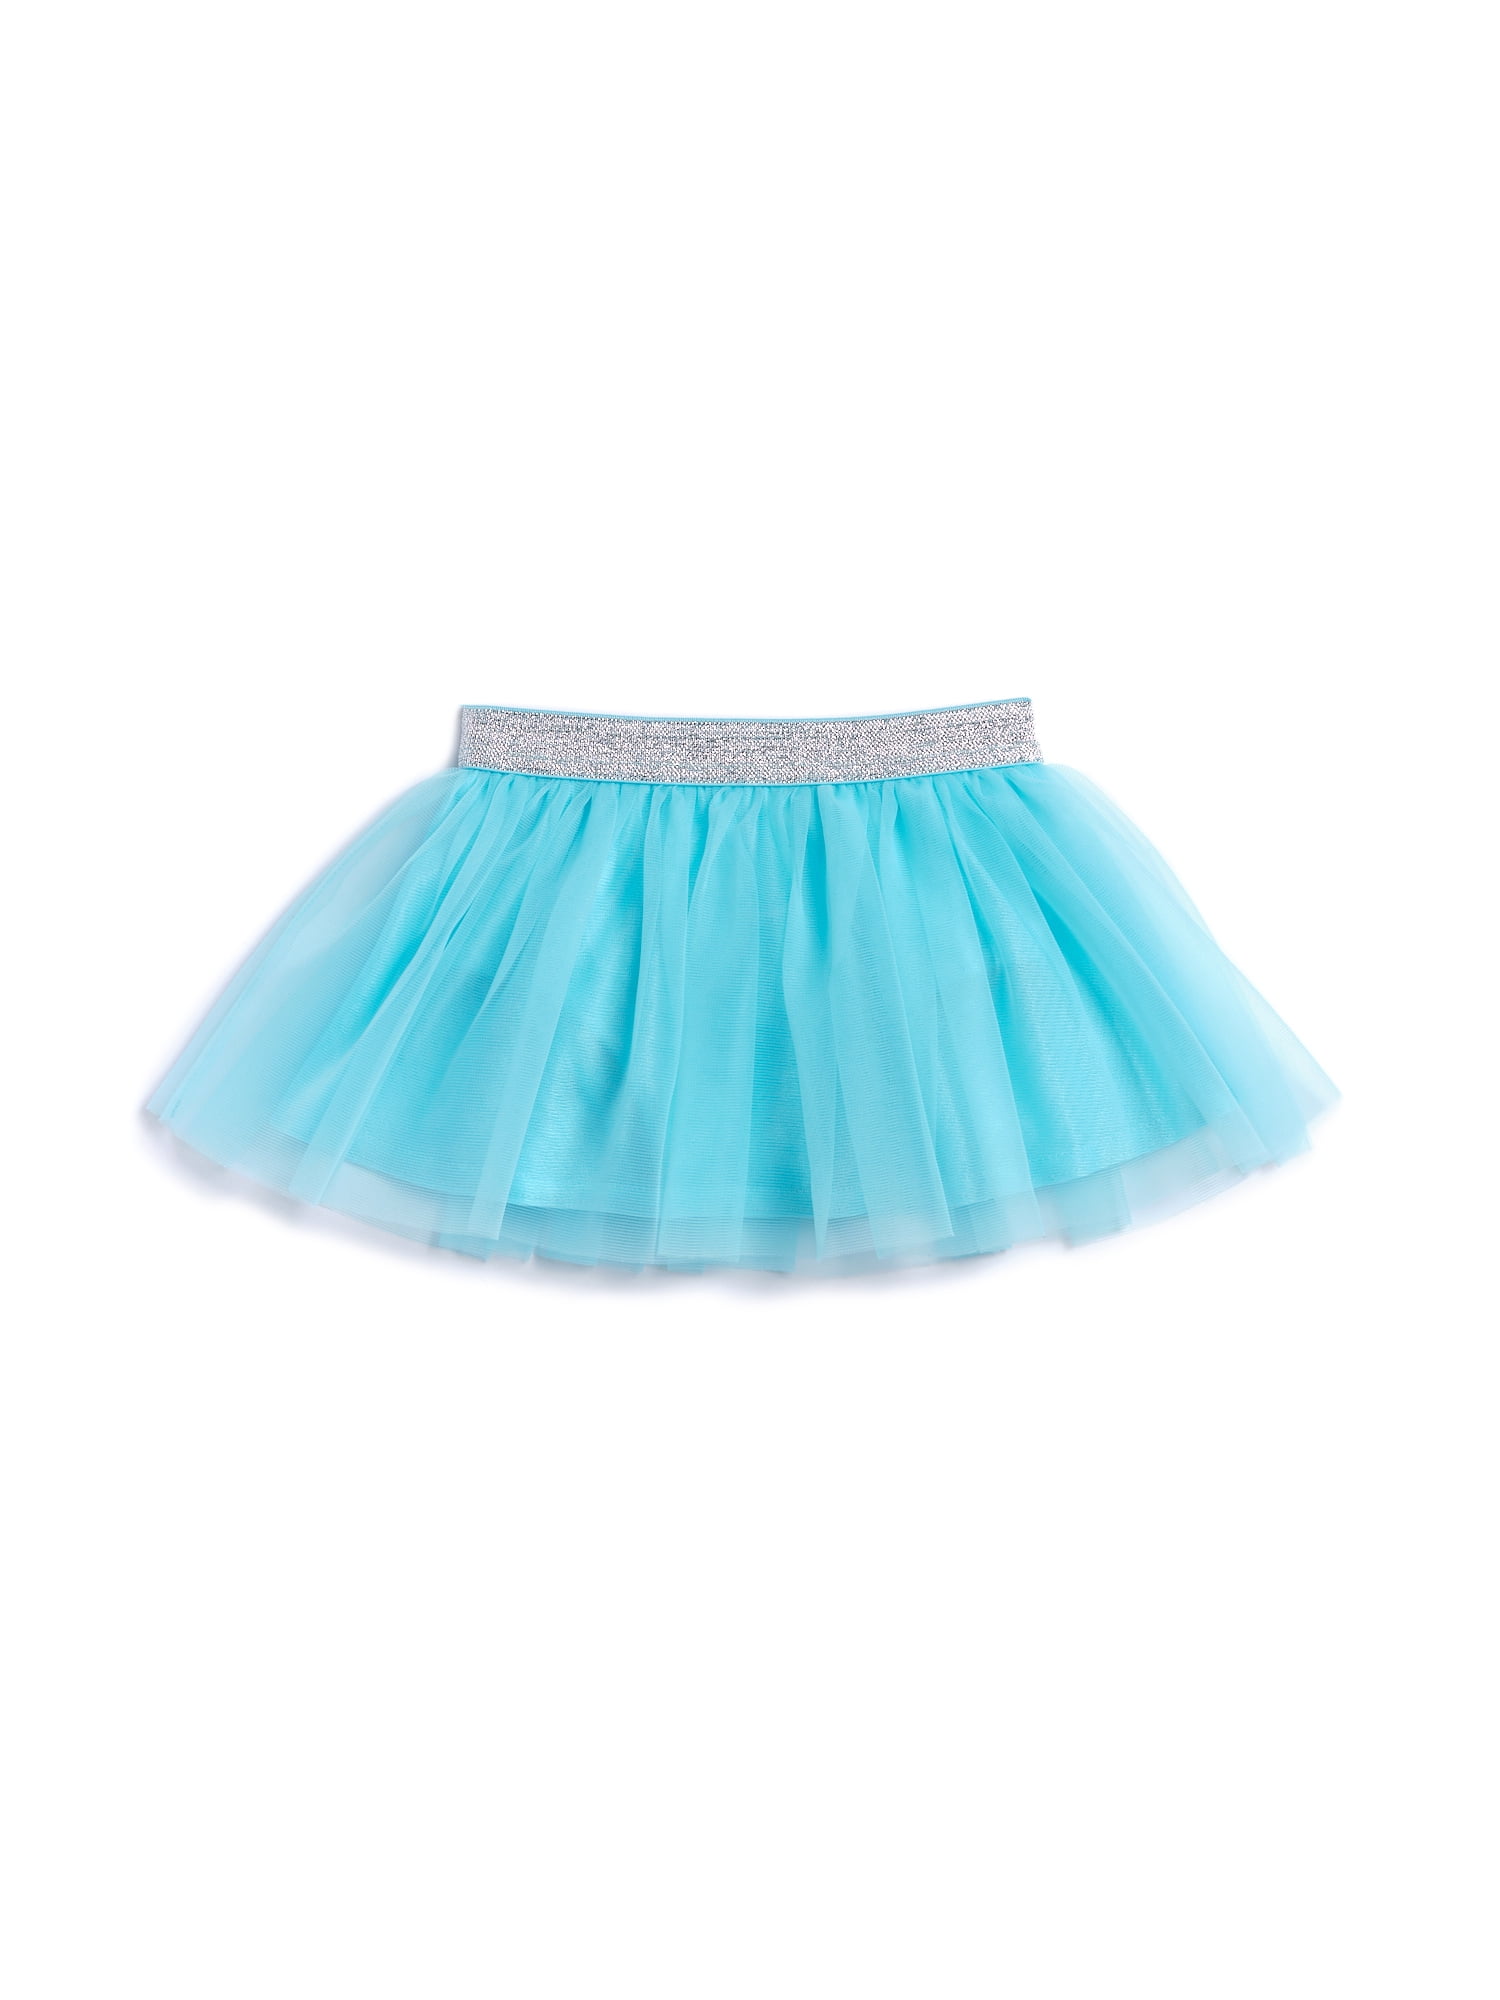 Garanimals Baby Girl's Tutu Skirt - Walmart.com